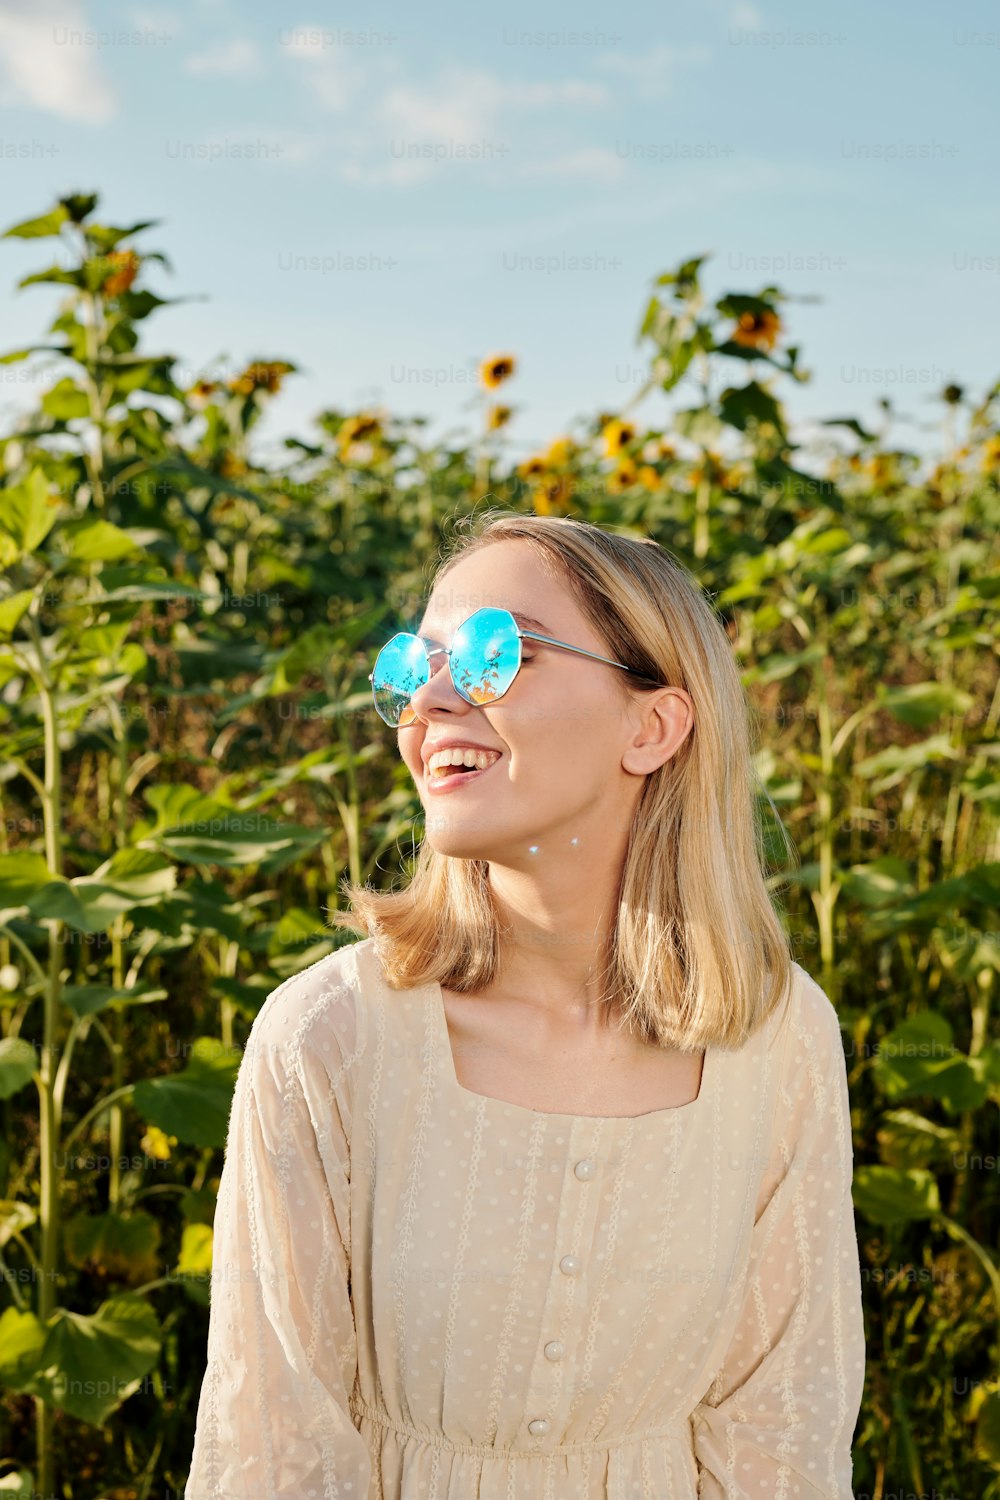 선글라스를 끼고 하얀 드레스를 입은 즐거운 젊은 금발 여성이 푸른 하늘을 배경으로 카메라 앞에 해바라기 밭을 배경으로 서 있다